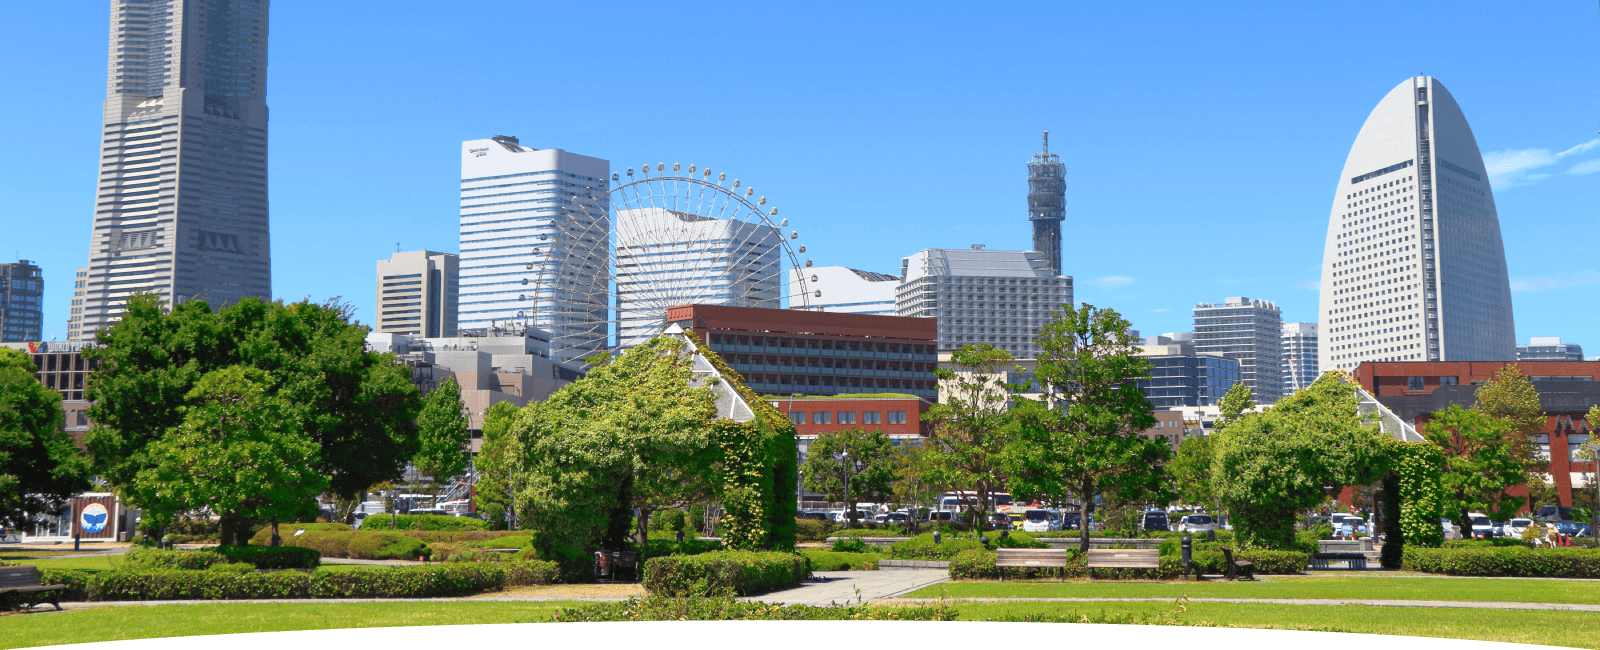 横浜のビルと緑